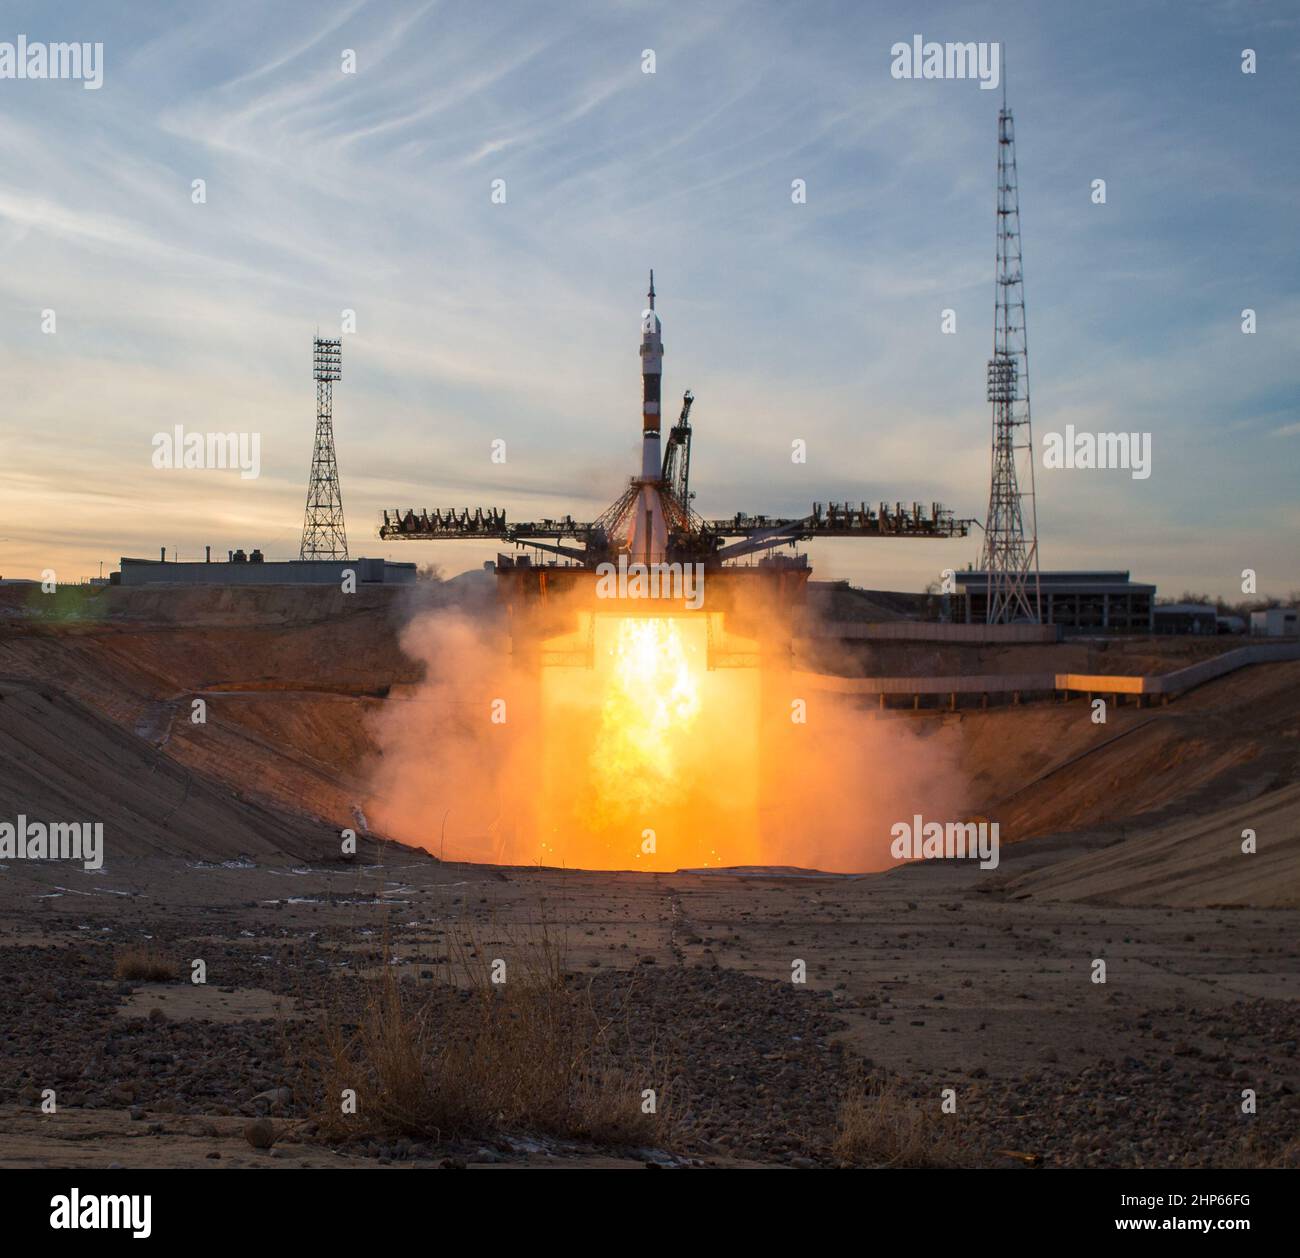 Un cohete propulsor Soyuz lanza la nave espacial Soyuz MS-11 desde el cosmódromo de Baikonur en Kazajstán el lunes 3 de diciembre de 2018, hora de Baikonur, llevando la Expedición 58 Soyuz Comandante Oleg Kononenko de Roscosmos, Ingeniero de Vuelo Anne McClain de la NASA, Y el ingeniero de vuelo David Saint-Jacques de la Agencia Espacial Canadiense (CSA) en órbita para comenzar su misión de seis meses y medio en la Estación Espacial Internacional Foto de stock